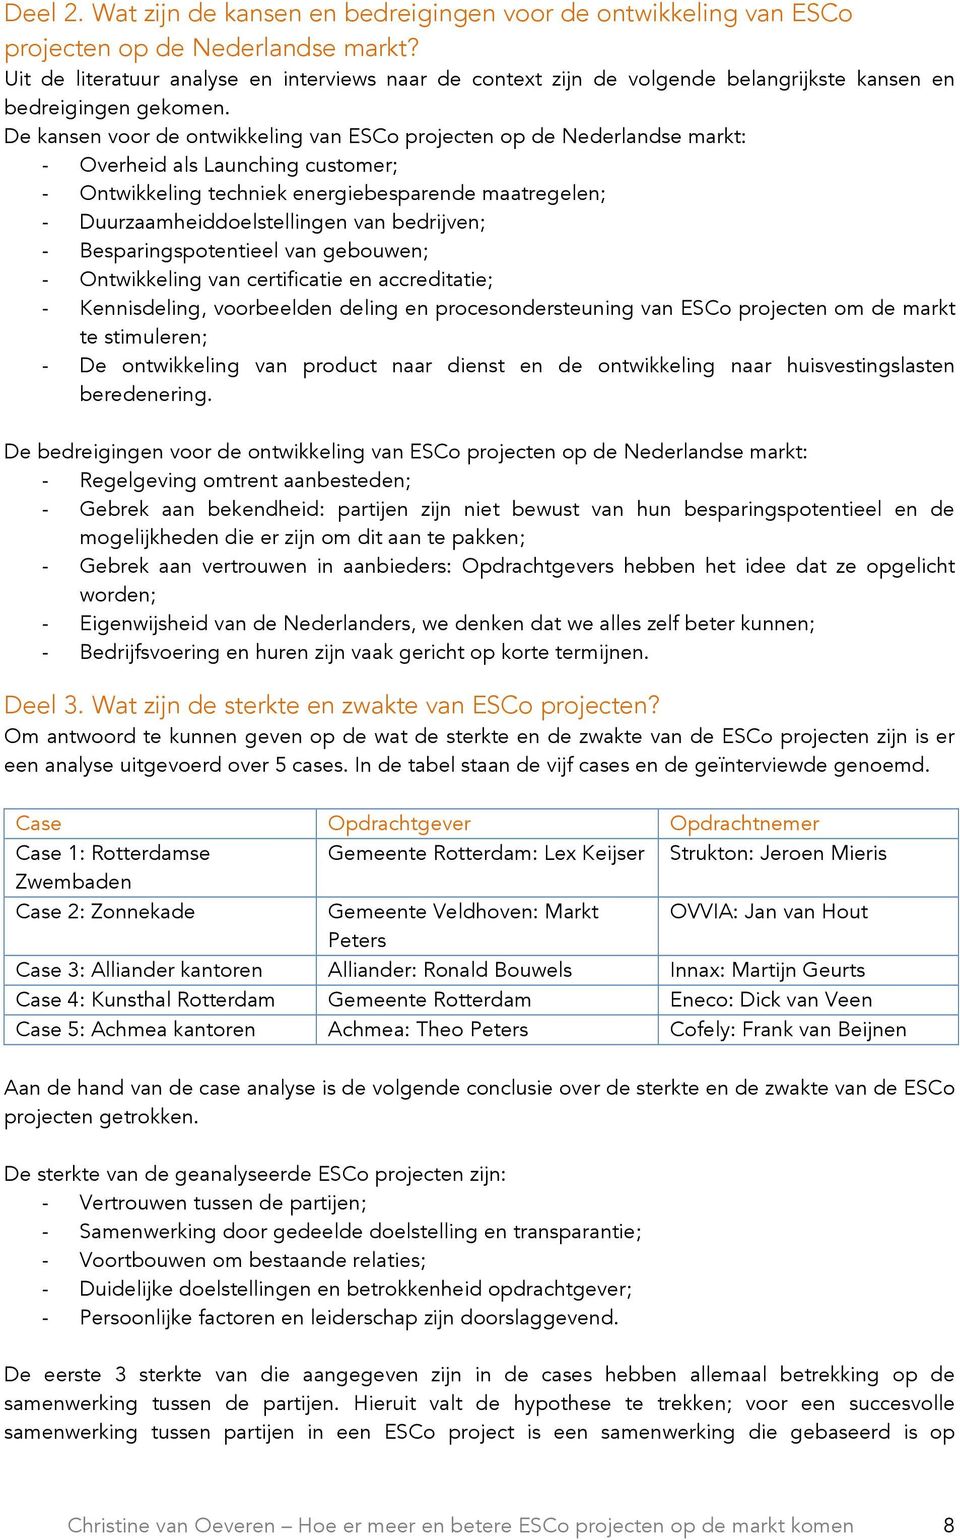 De kansen voor de ontwikkeling van ESCo projecten op de Nederlandse markt: - Overheid als Launching customer; - Ontwikkeling techniek energiebesparende maatregelen; - Duurzaamheiddoelstellingen van